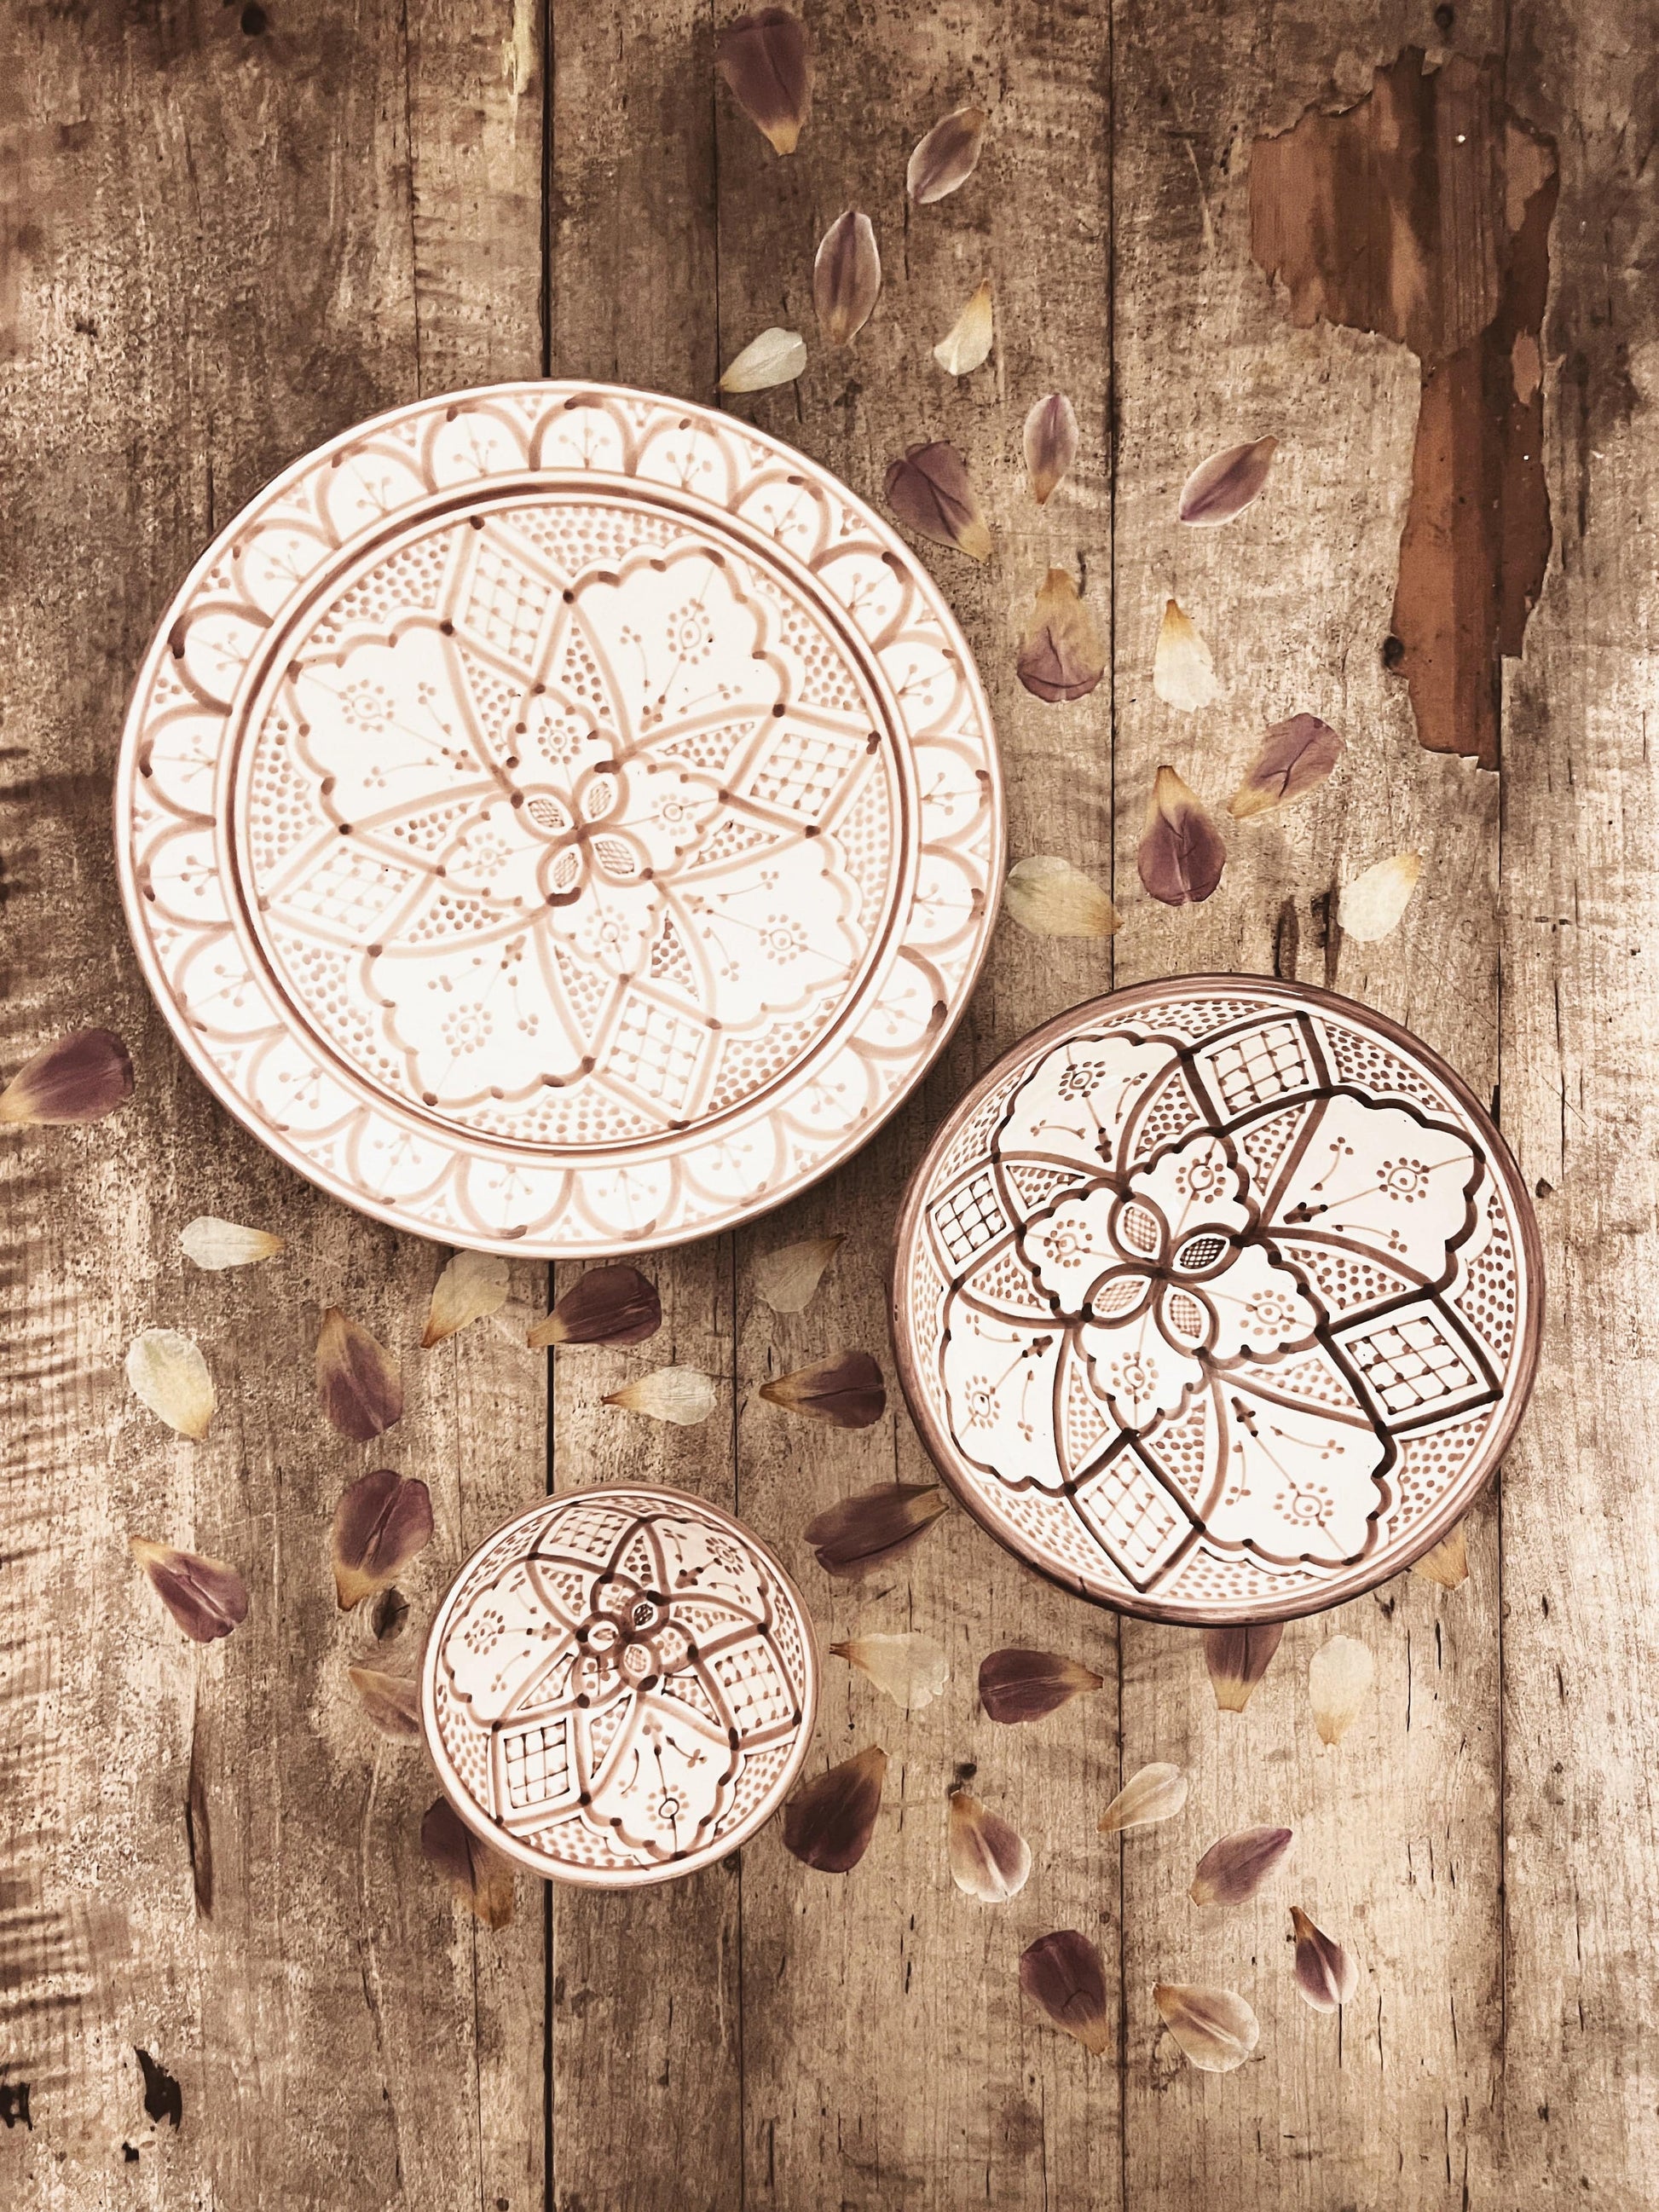 Håndlagde og håndmalte fat og skåler fra Marokko med nydelige detaljer i fargen mocca. Alle fat og skåler er unike, perfekte å deke bordet med.